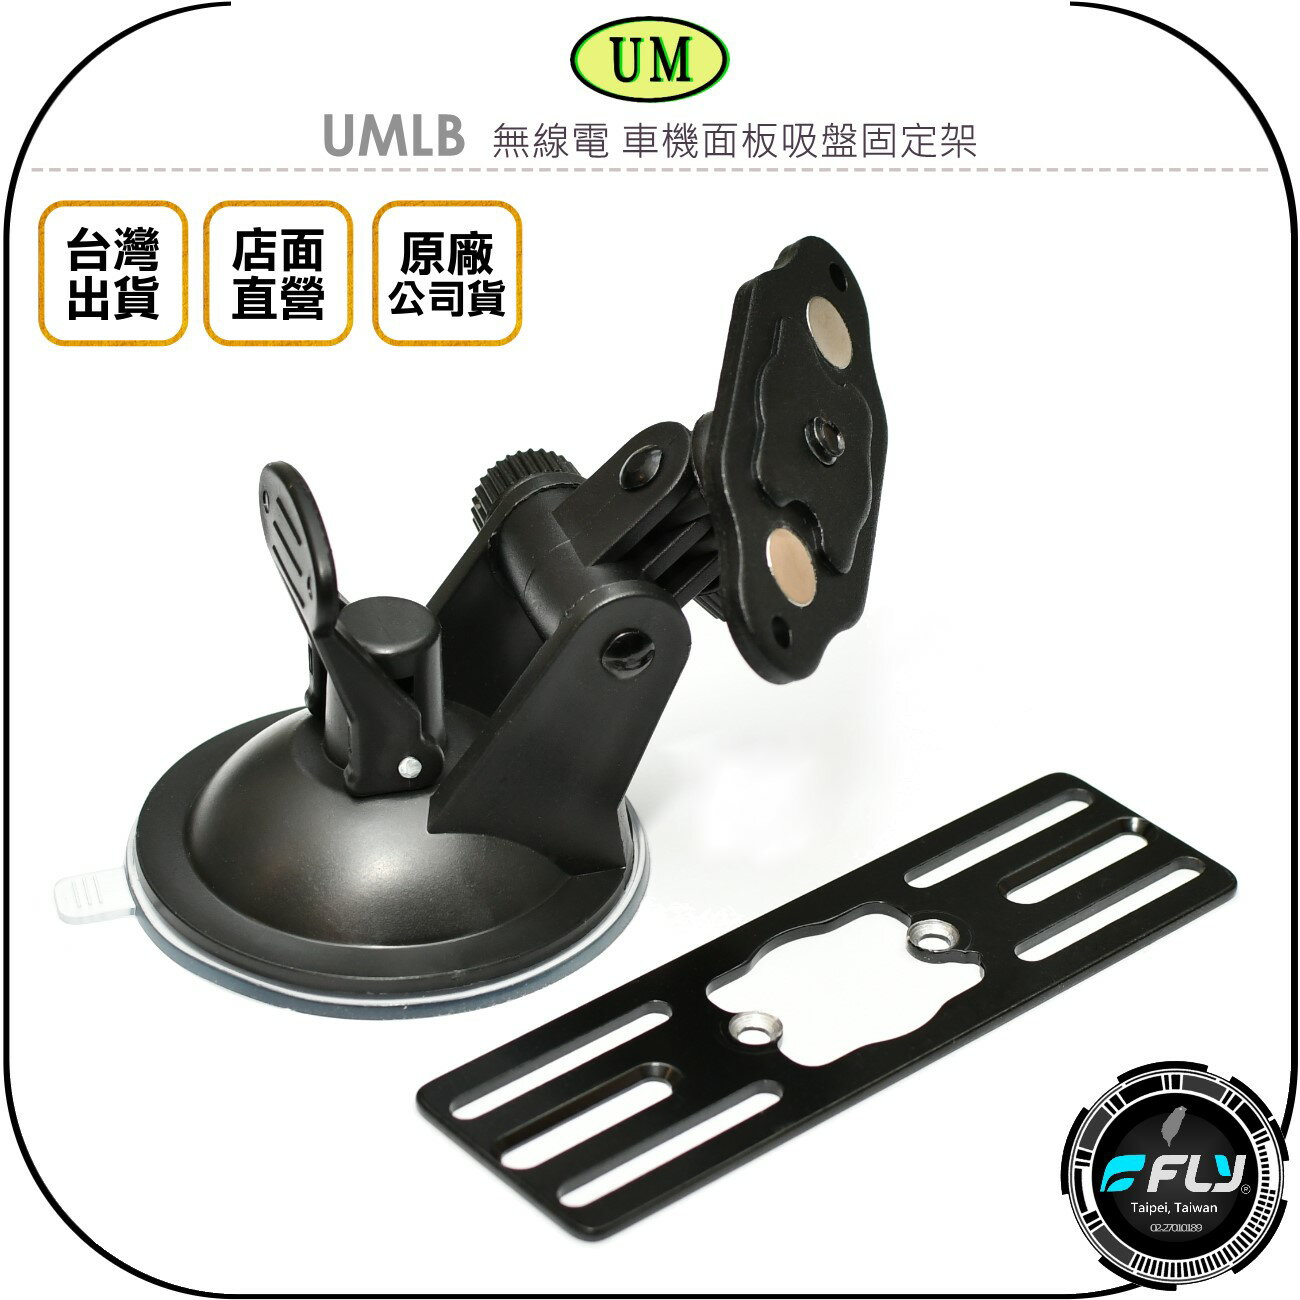 《飛翔無線3C》UM UMLB 無線電 車機面板吸盤固定架◉公司貨◉台灣製造◉適用 IC-2730A TM-V71A